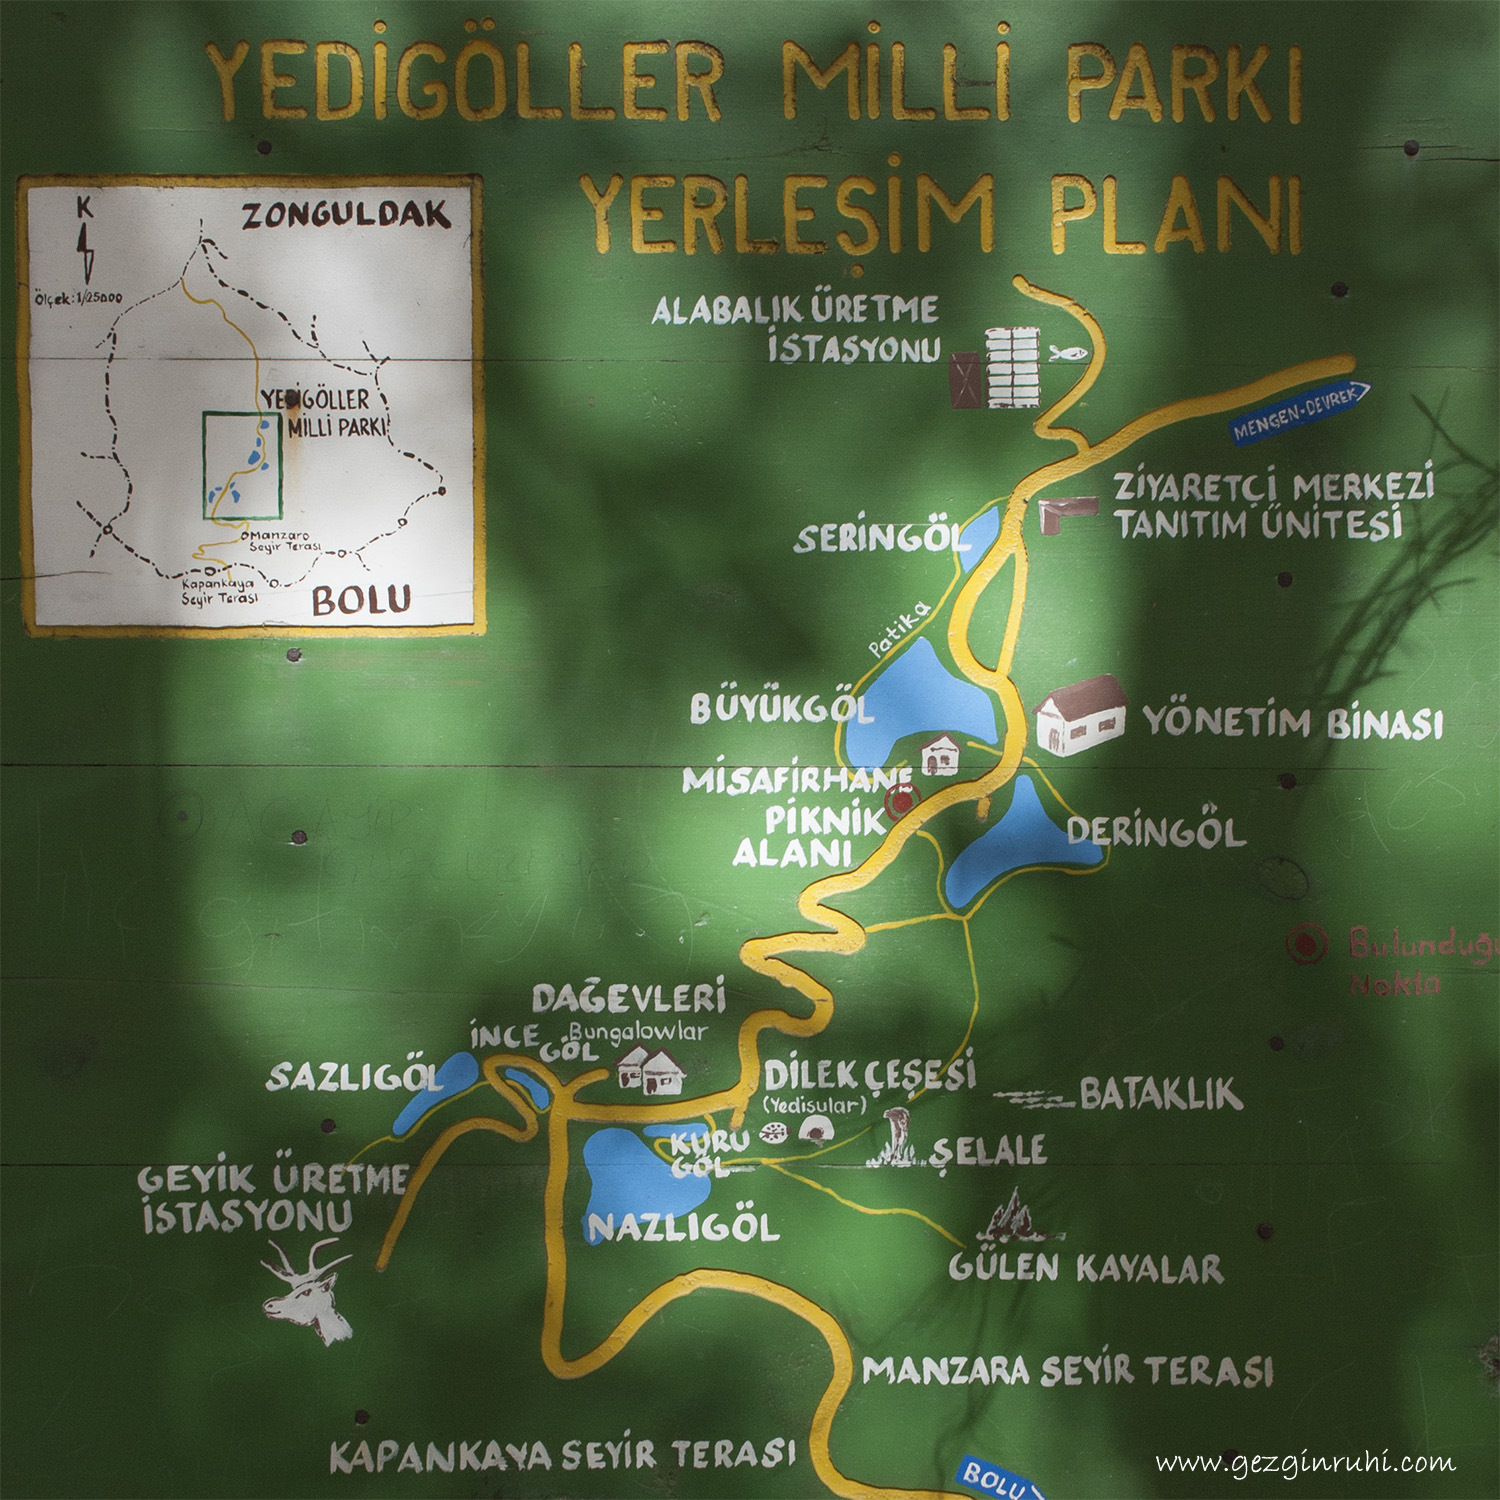 Yedigöller Milli Parkı Yerleşim Planı